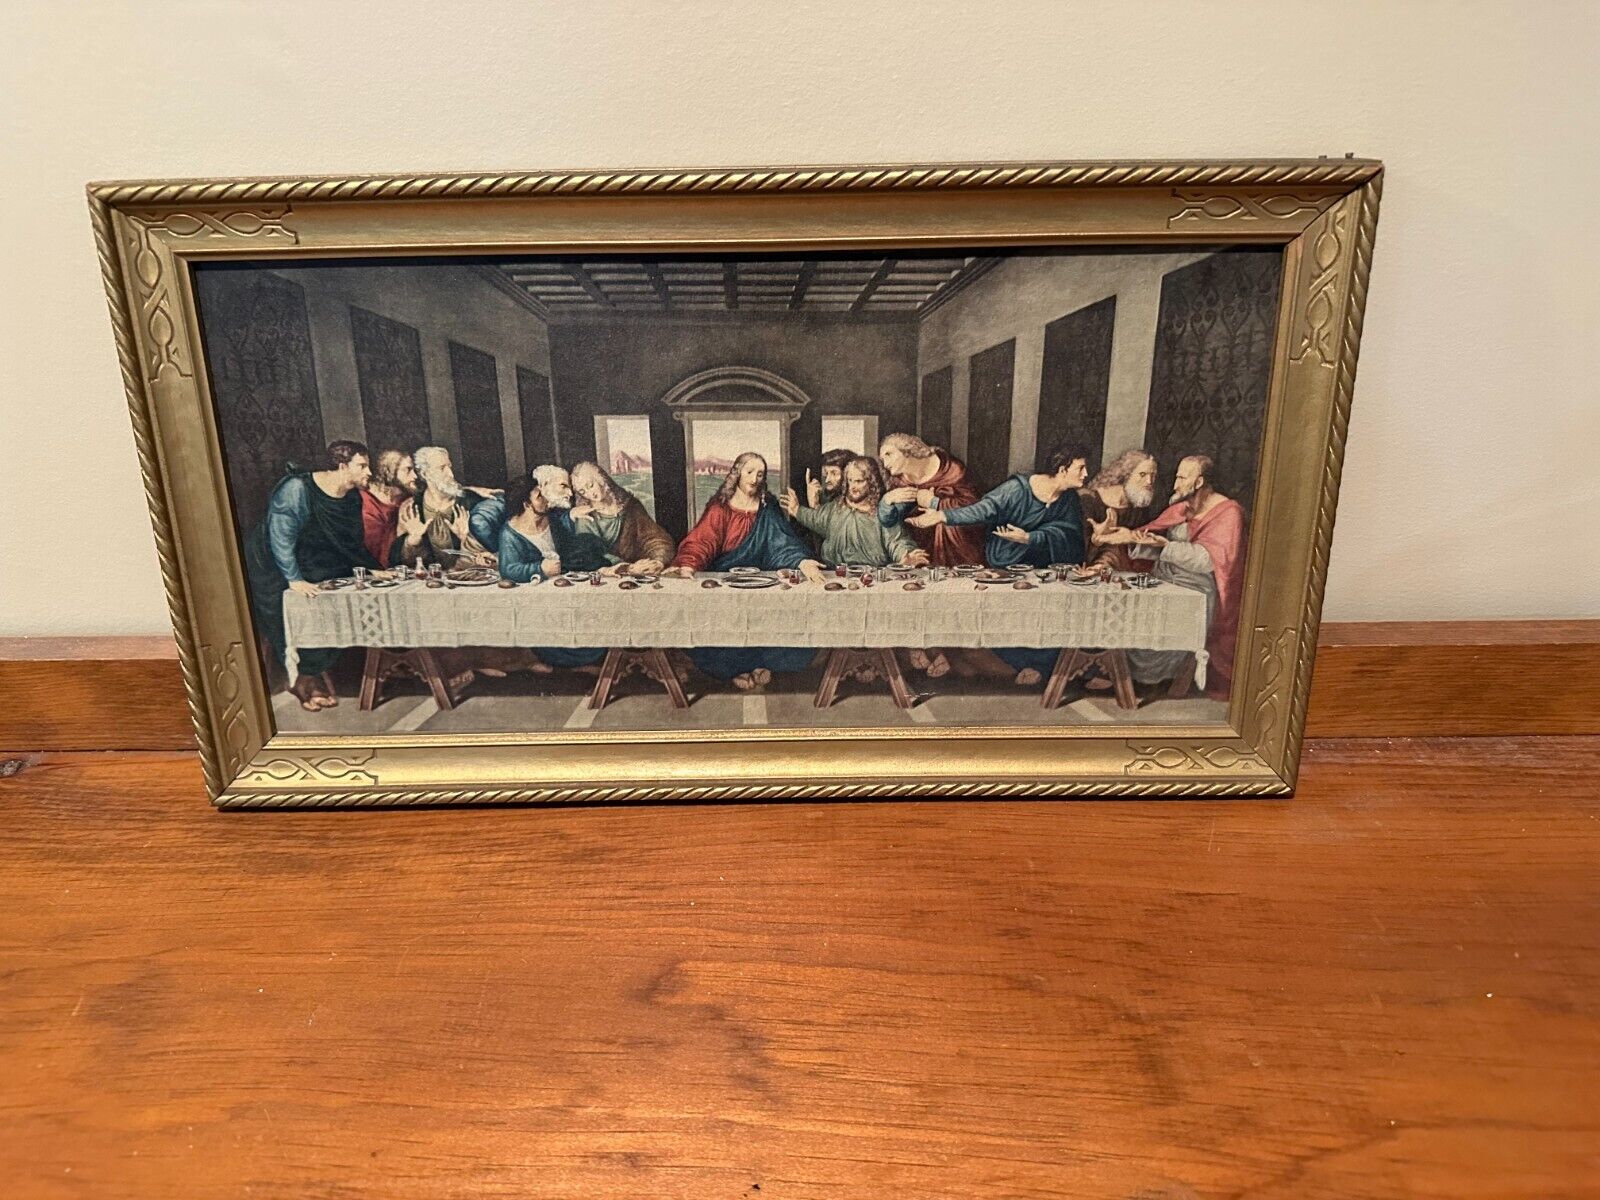 Vintage Framed Last Supper Print Wall Hanging, Wood Gold Frame 23.5